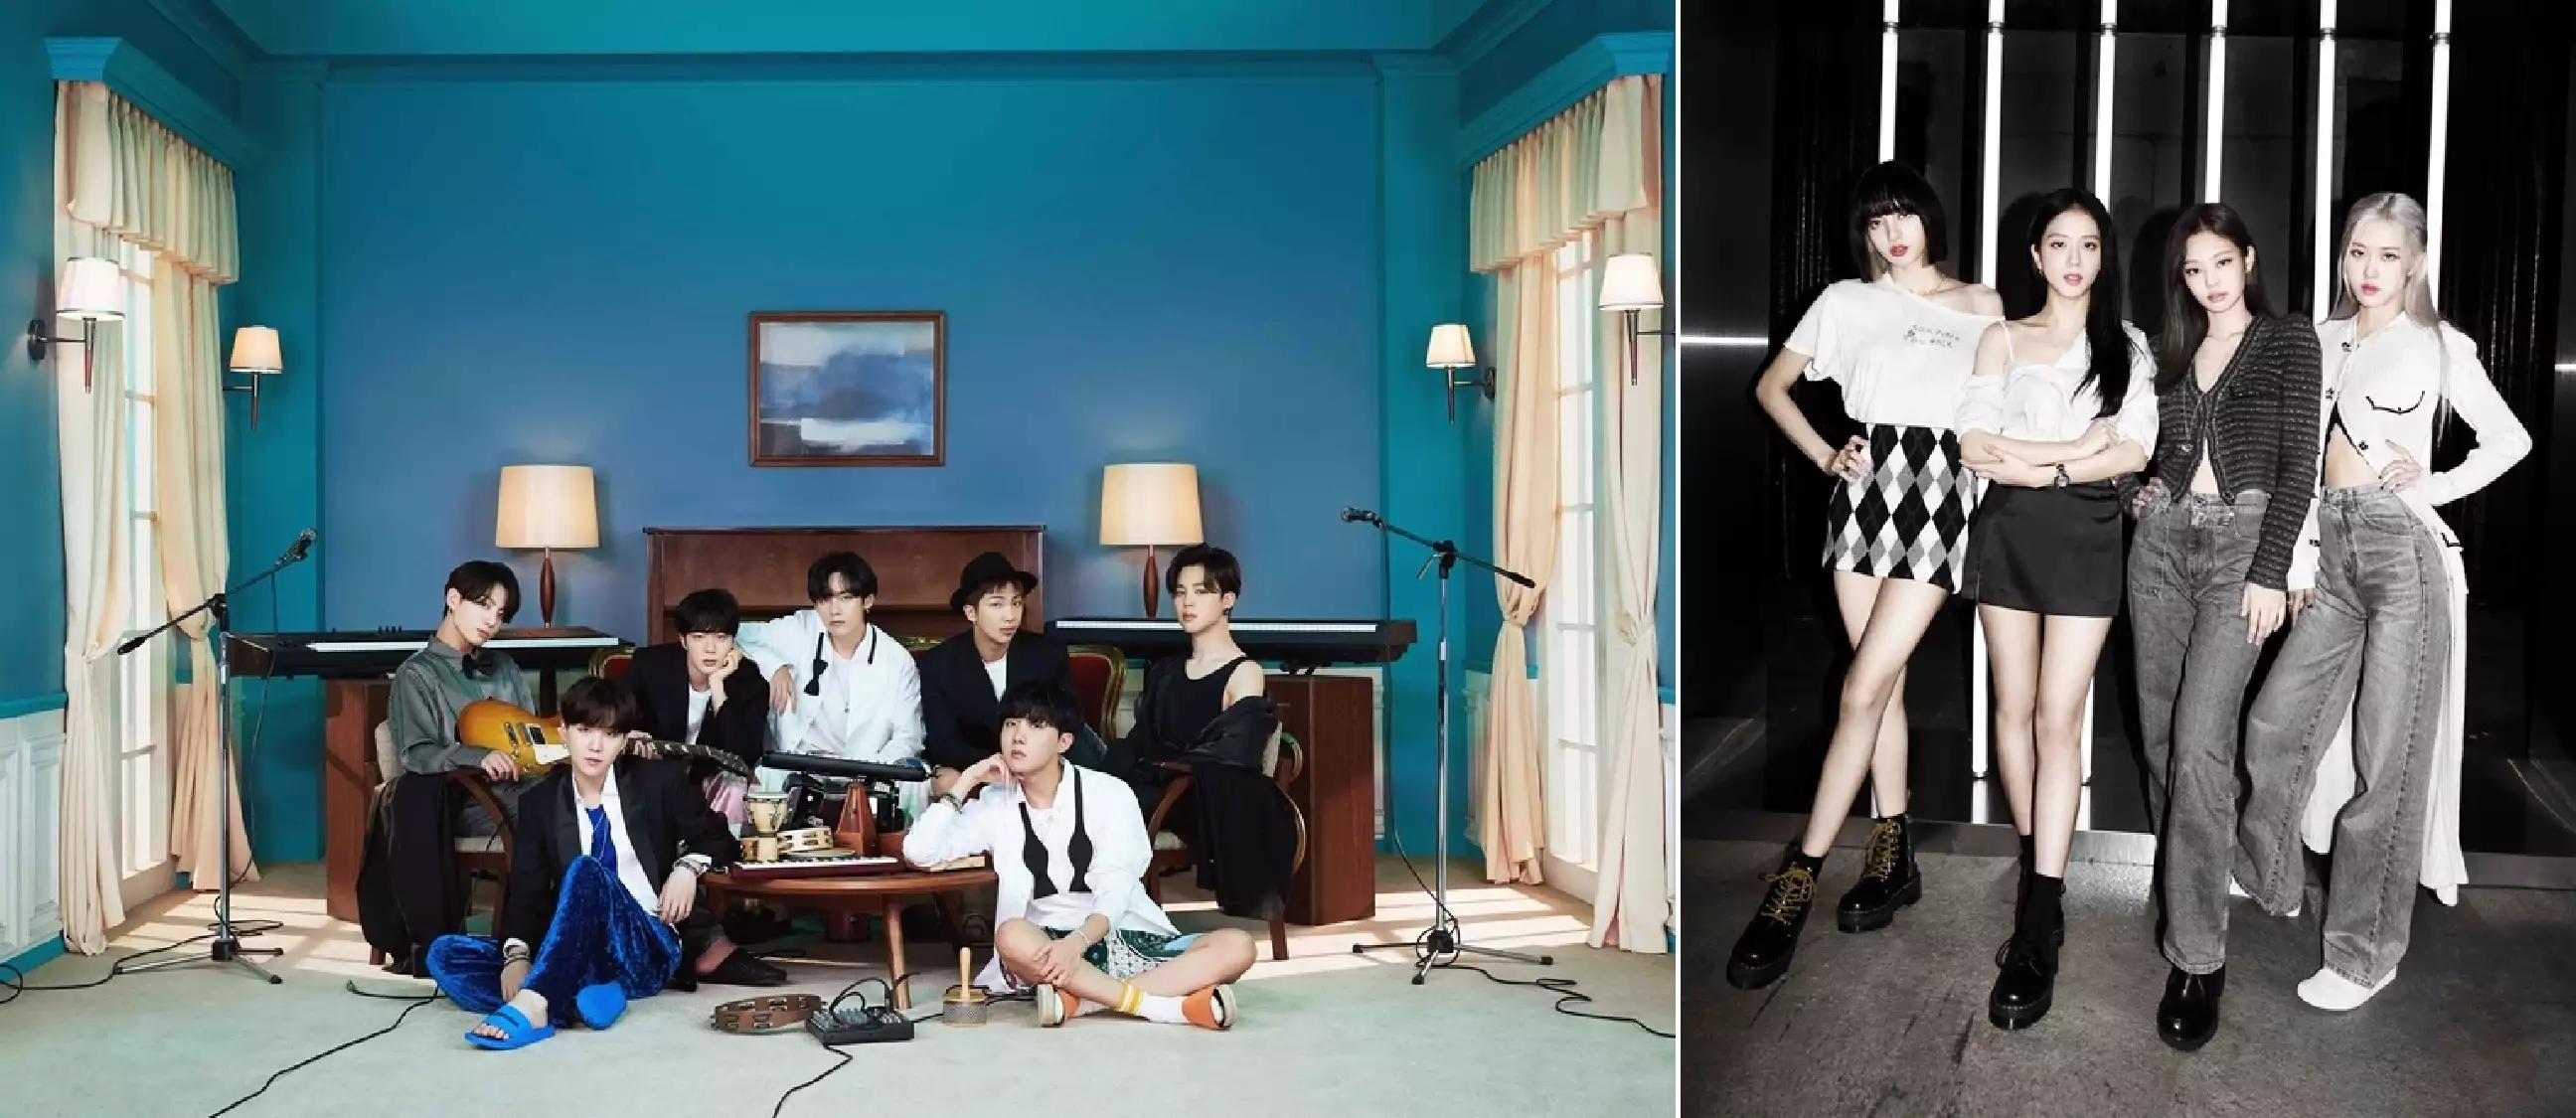 BTS dan Blackpink bakal bikin heboh, tampil bareng musisi Tanah Air